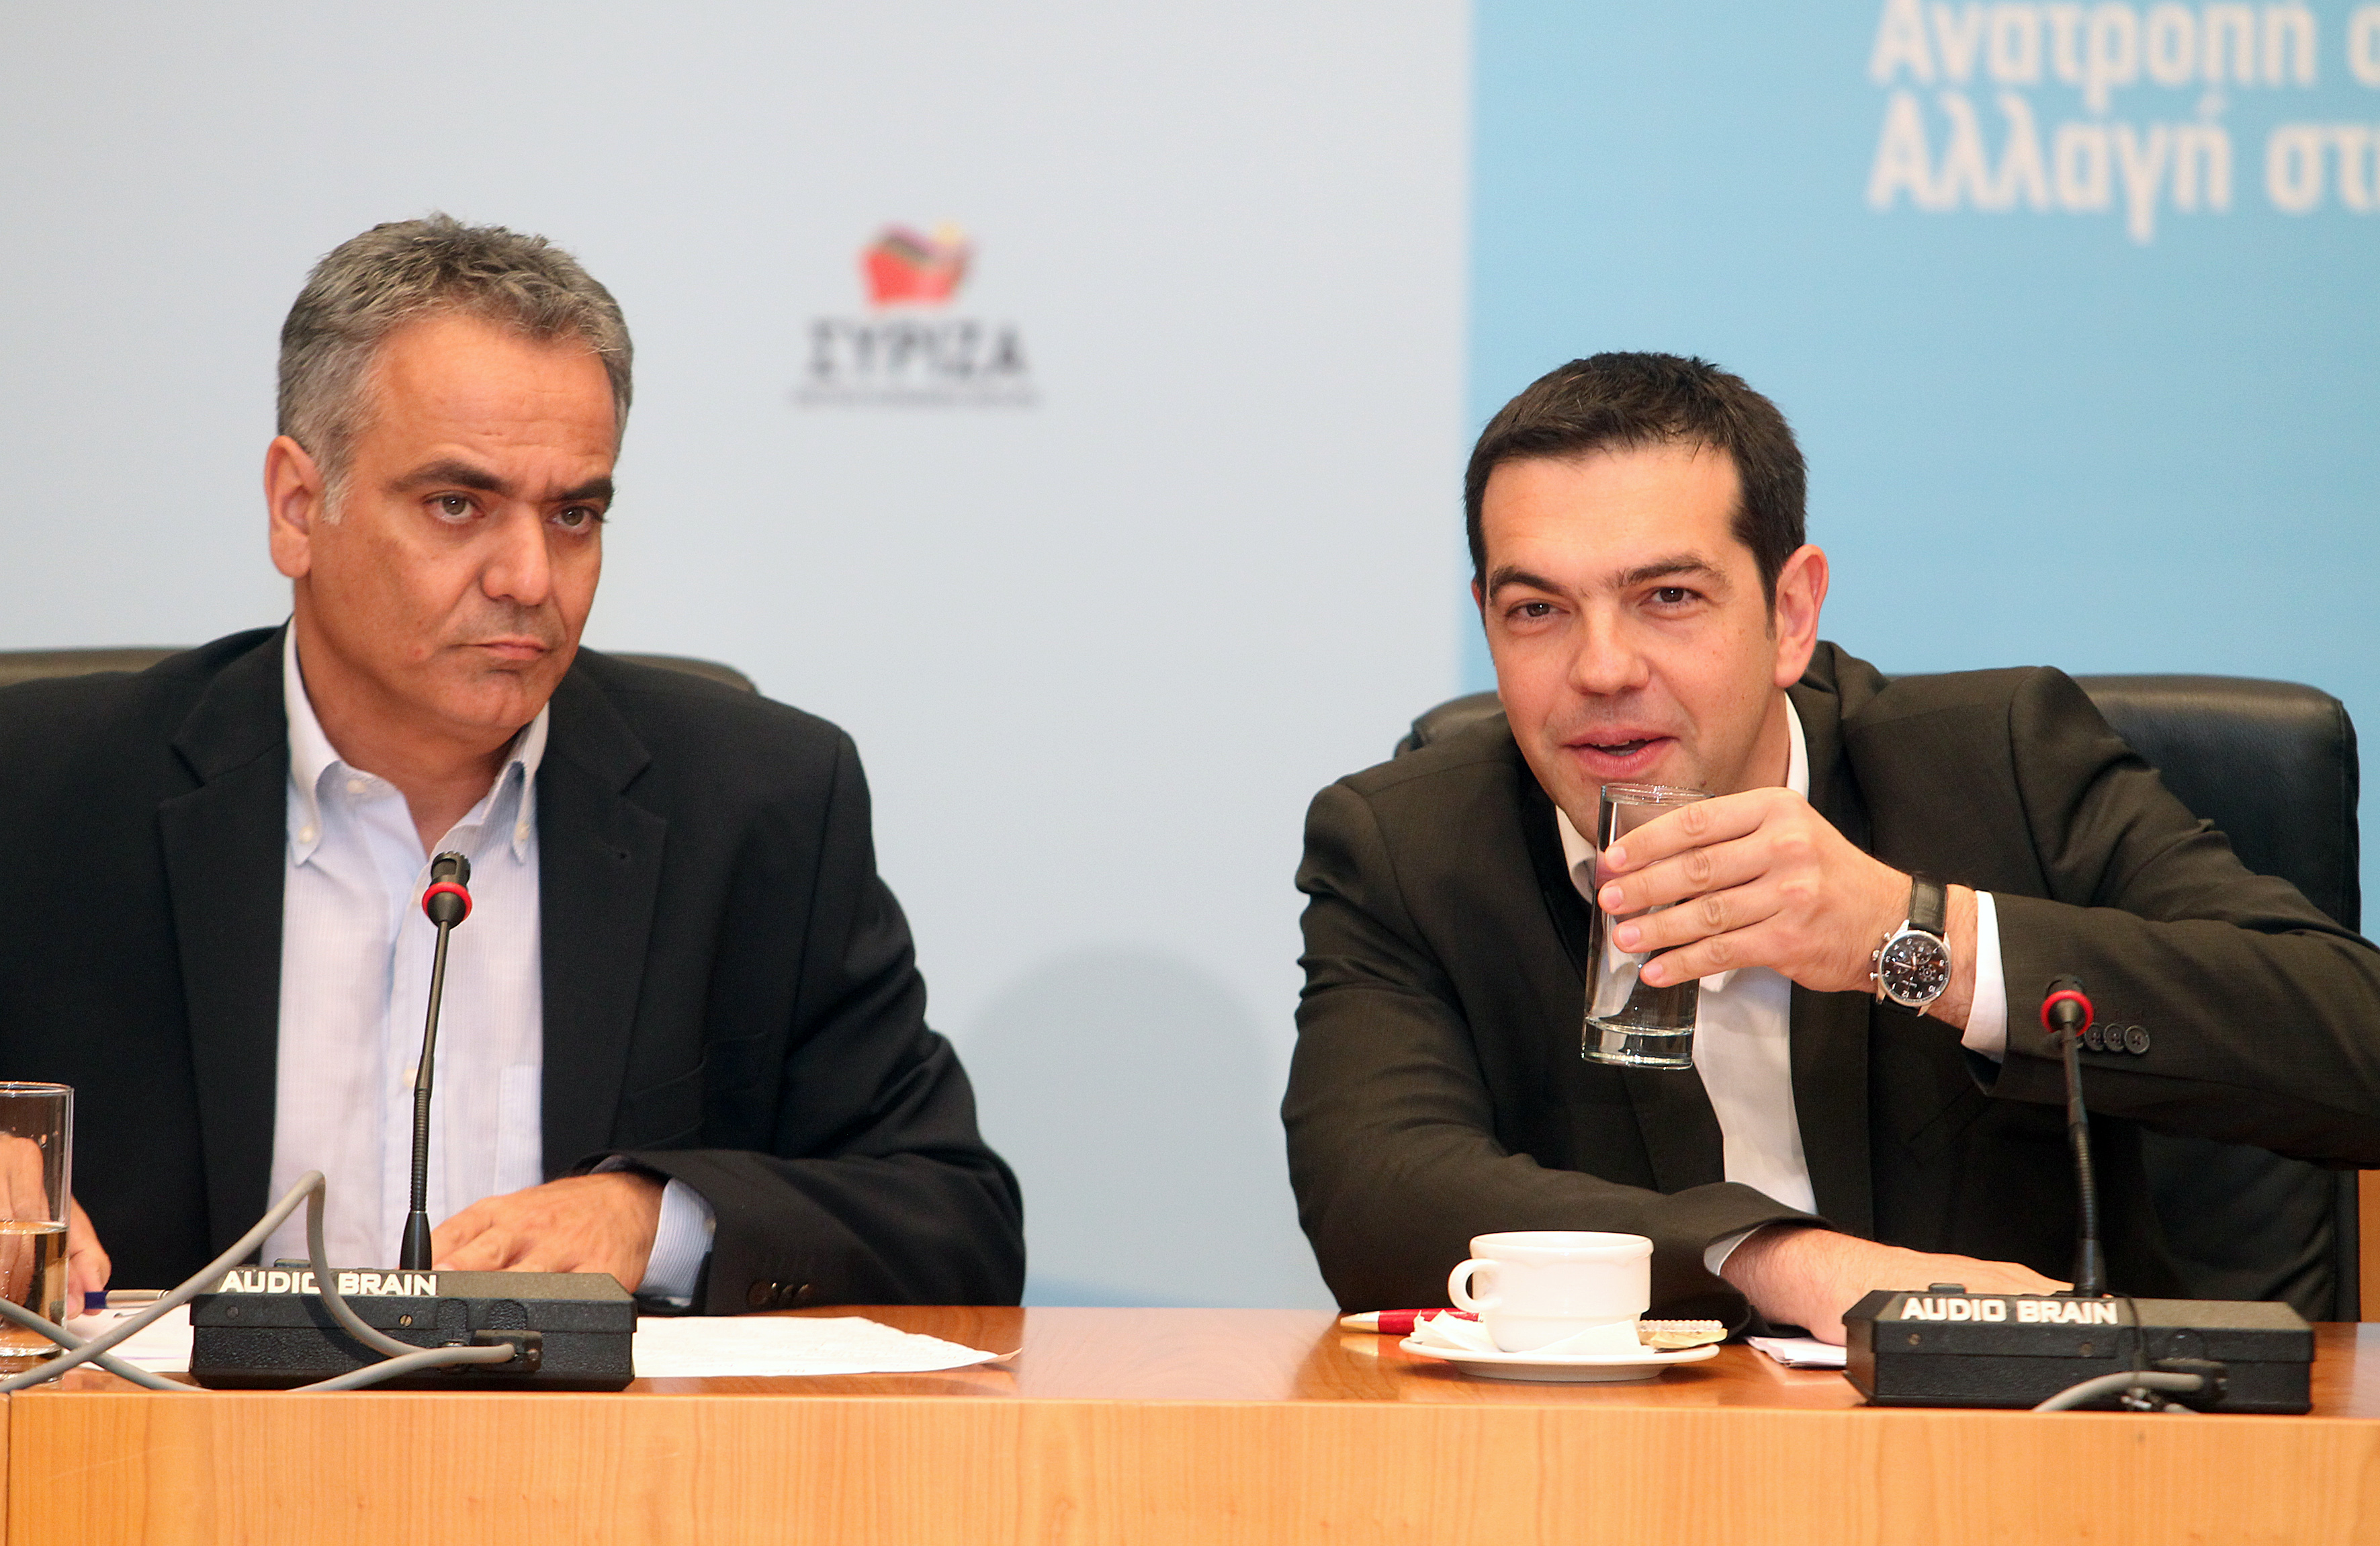 Π. Σκουρλέτης: «Πολιτικά αστεία η συζήτηση για κυβέρνηση συνεργασίας ΣΥΡΙΖΑ με ΝΔ και ΠαΣοΚ»